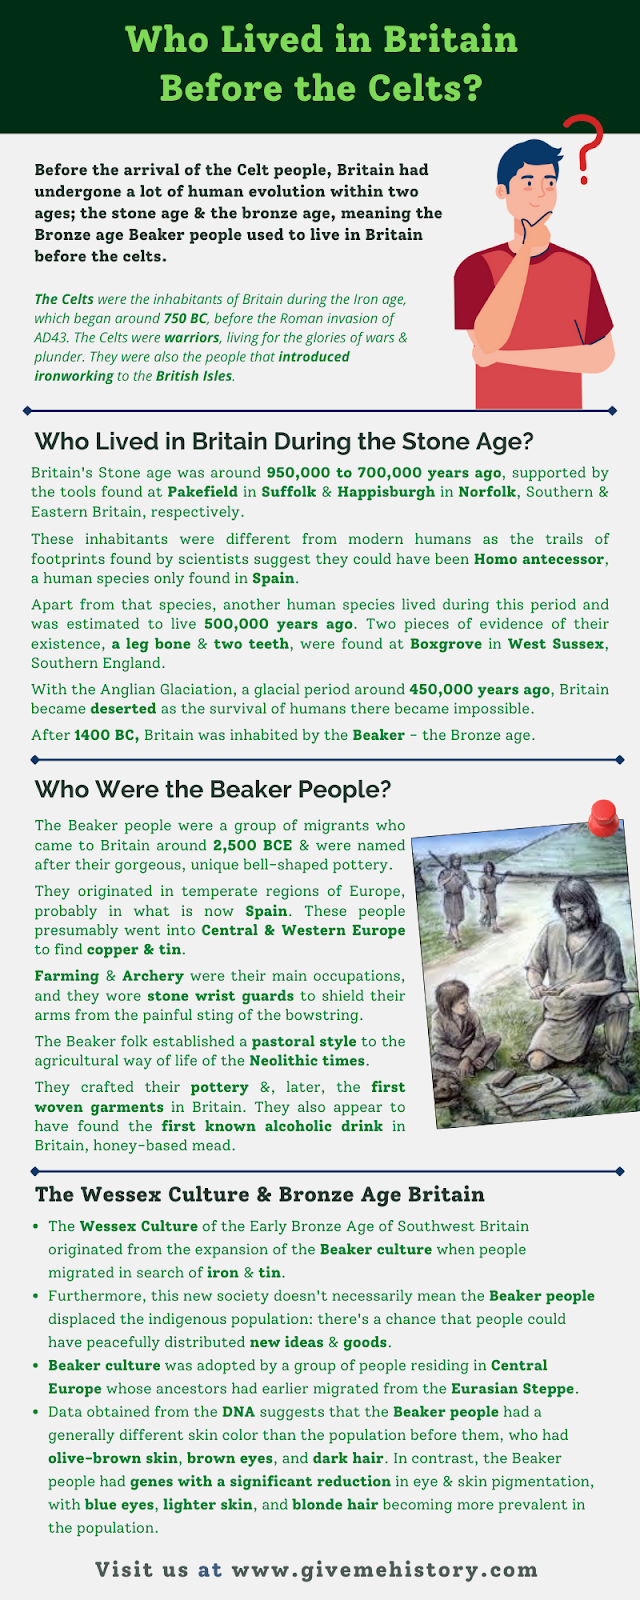 Kik éltek Nagy-Britanniában a kelták előtt?